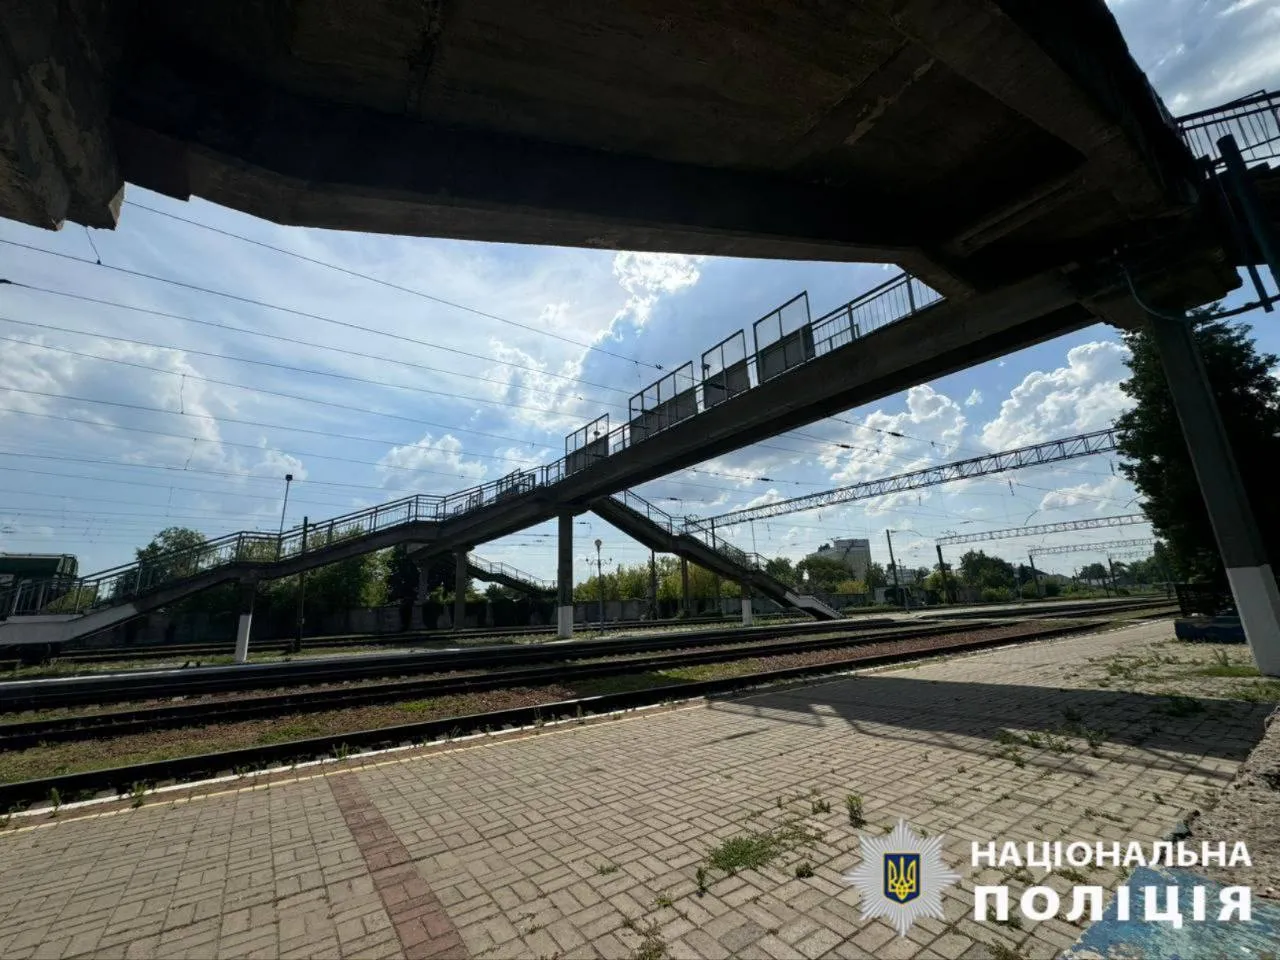 В Киевской области пенсионерка сбросила собаку с железнодорожного моста. Подробности дела